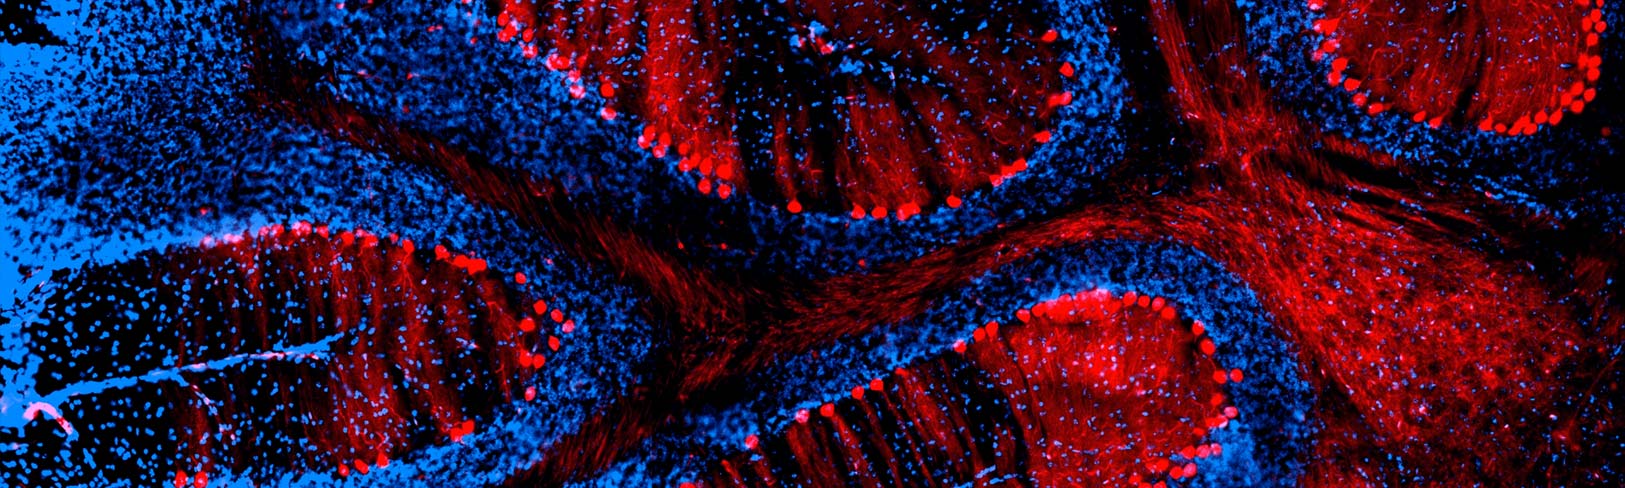 Neuroscience Banner Image